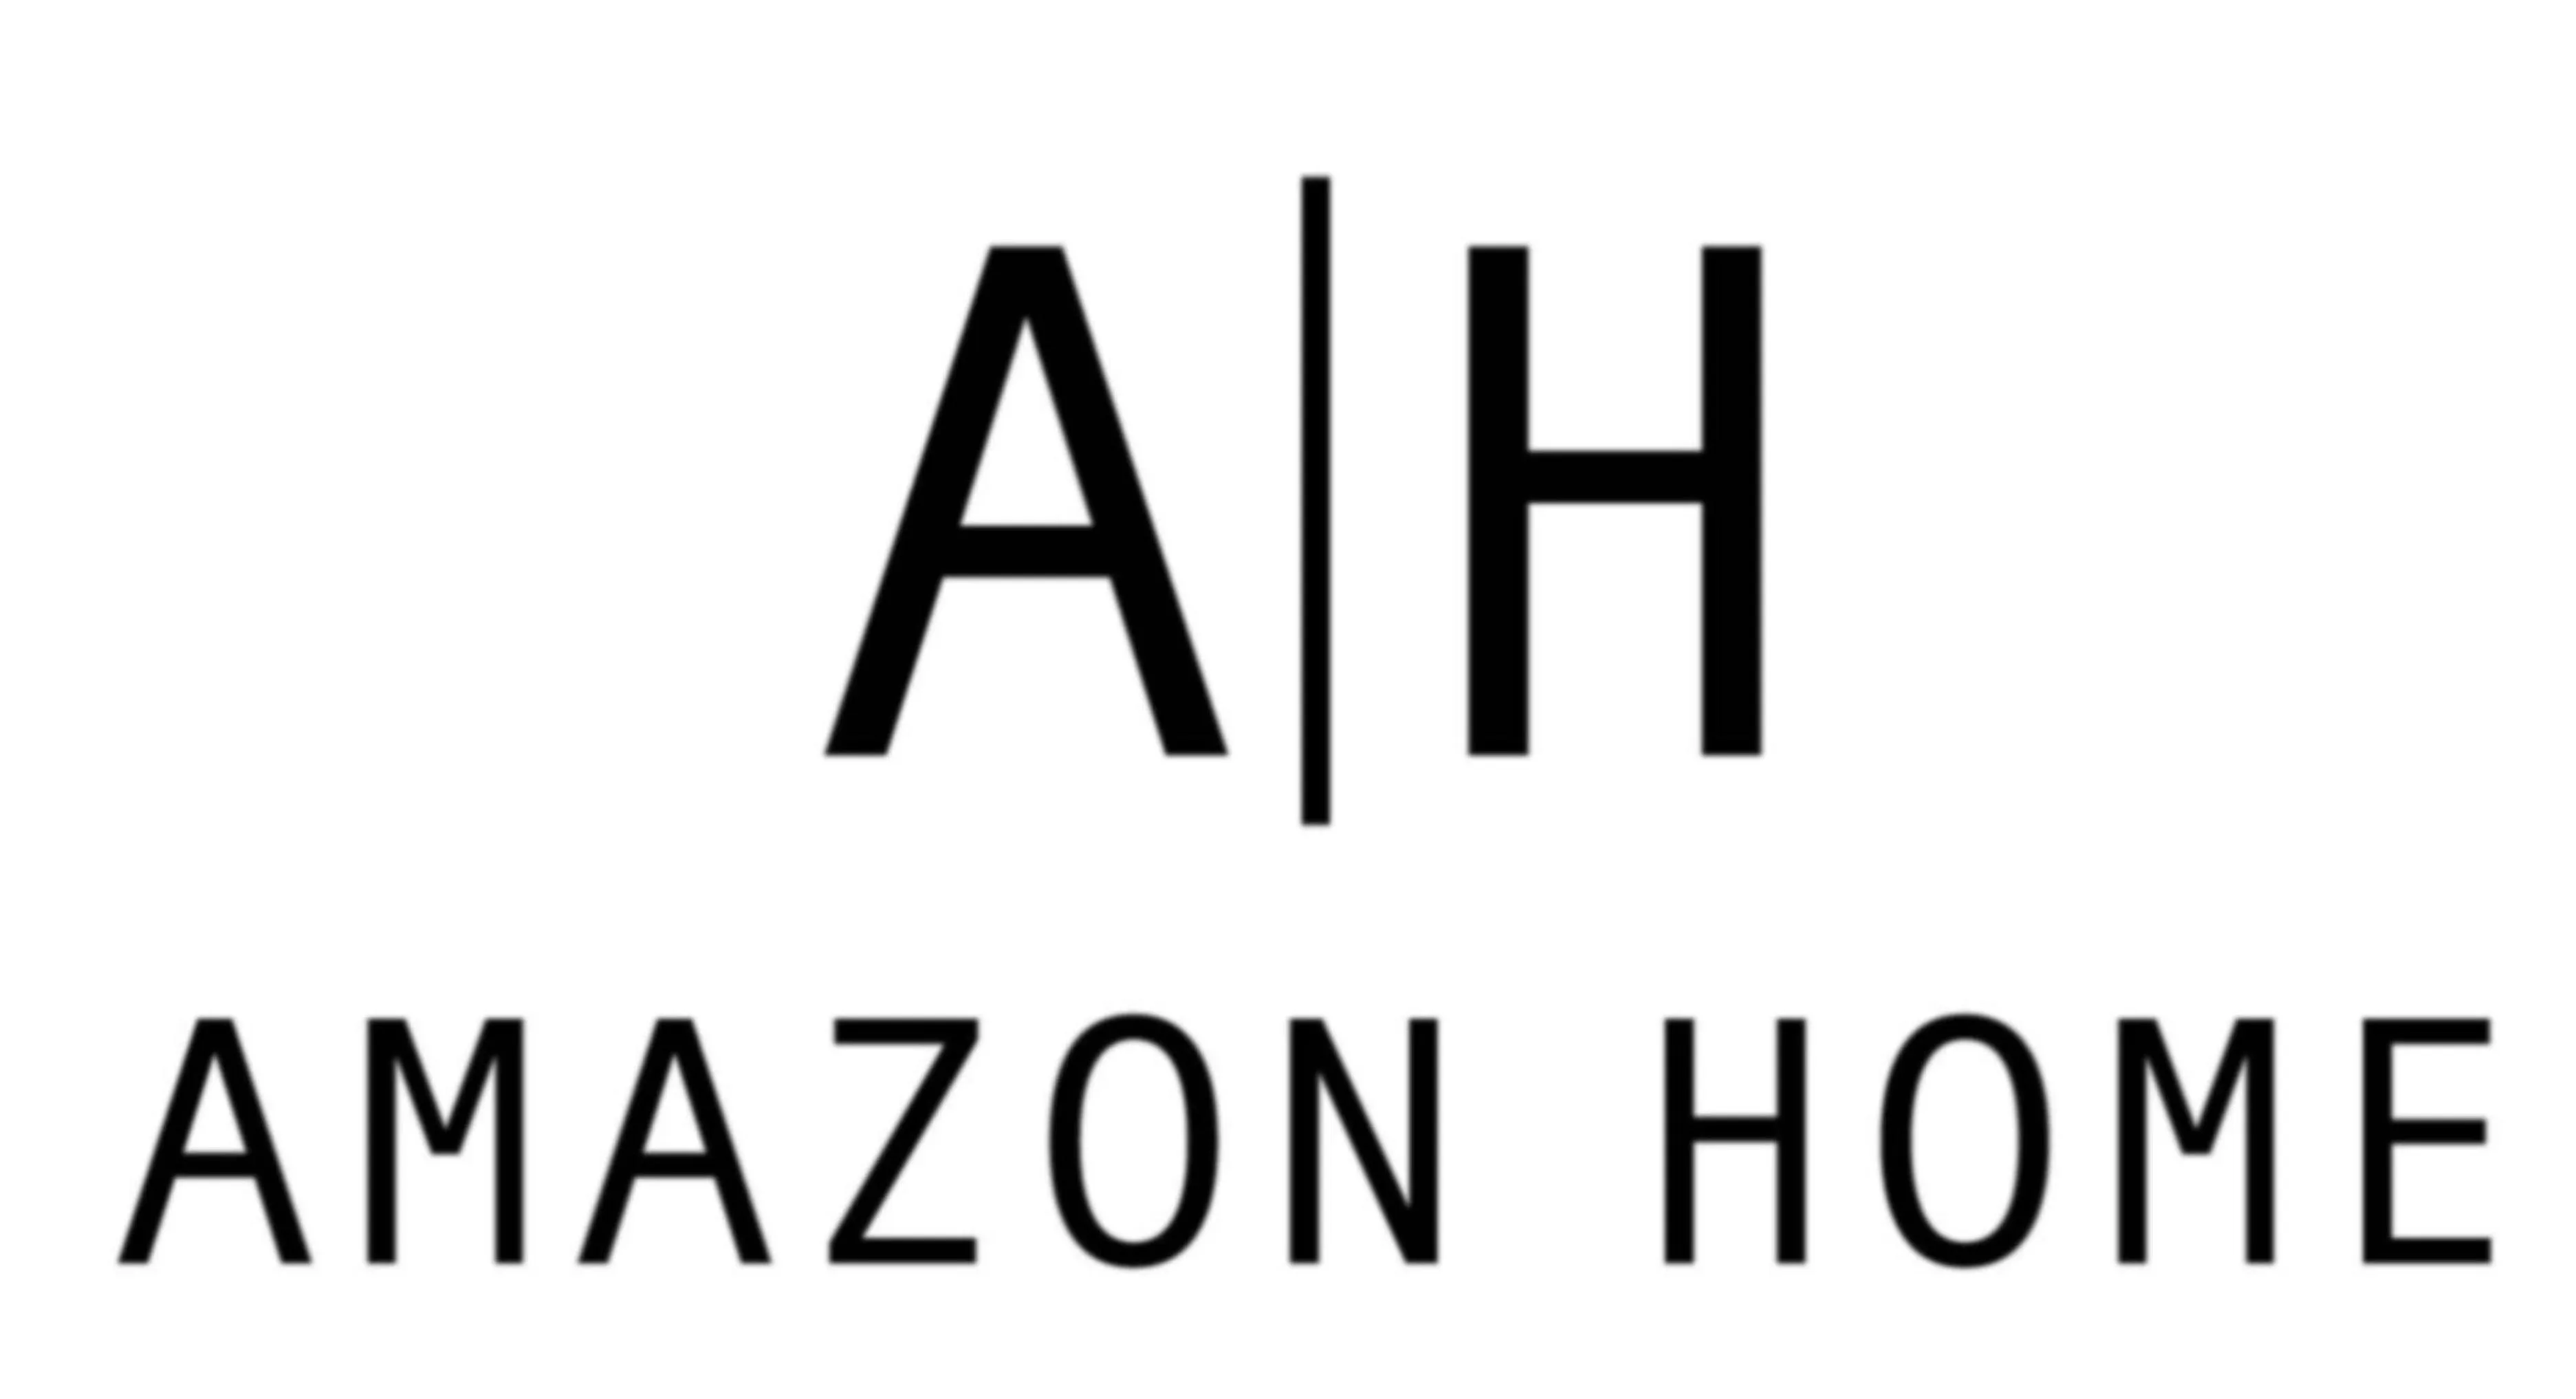 Amazon Home